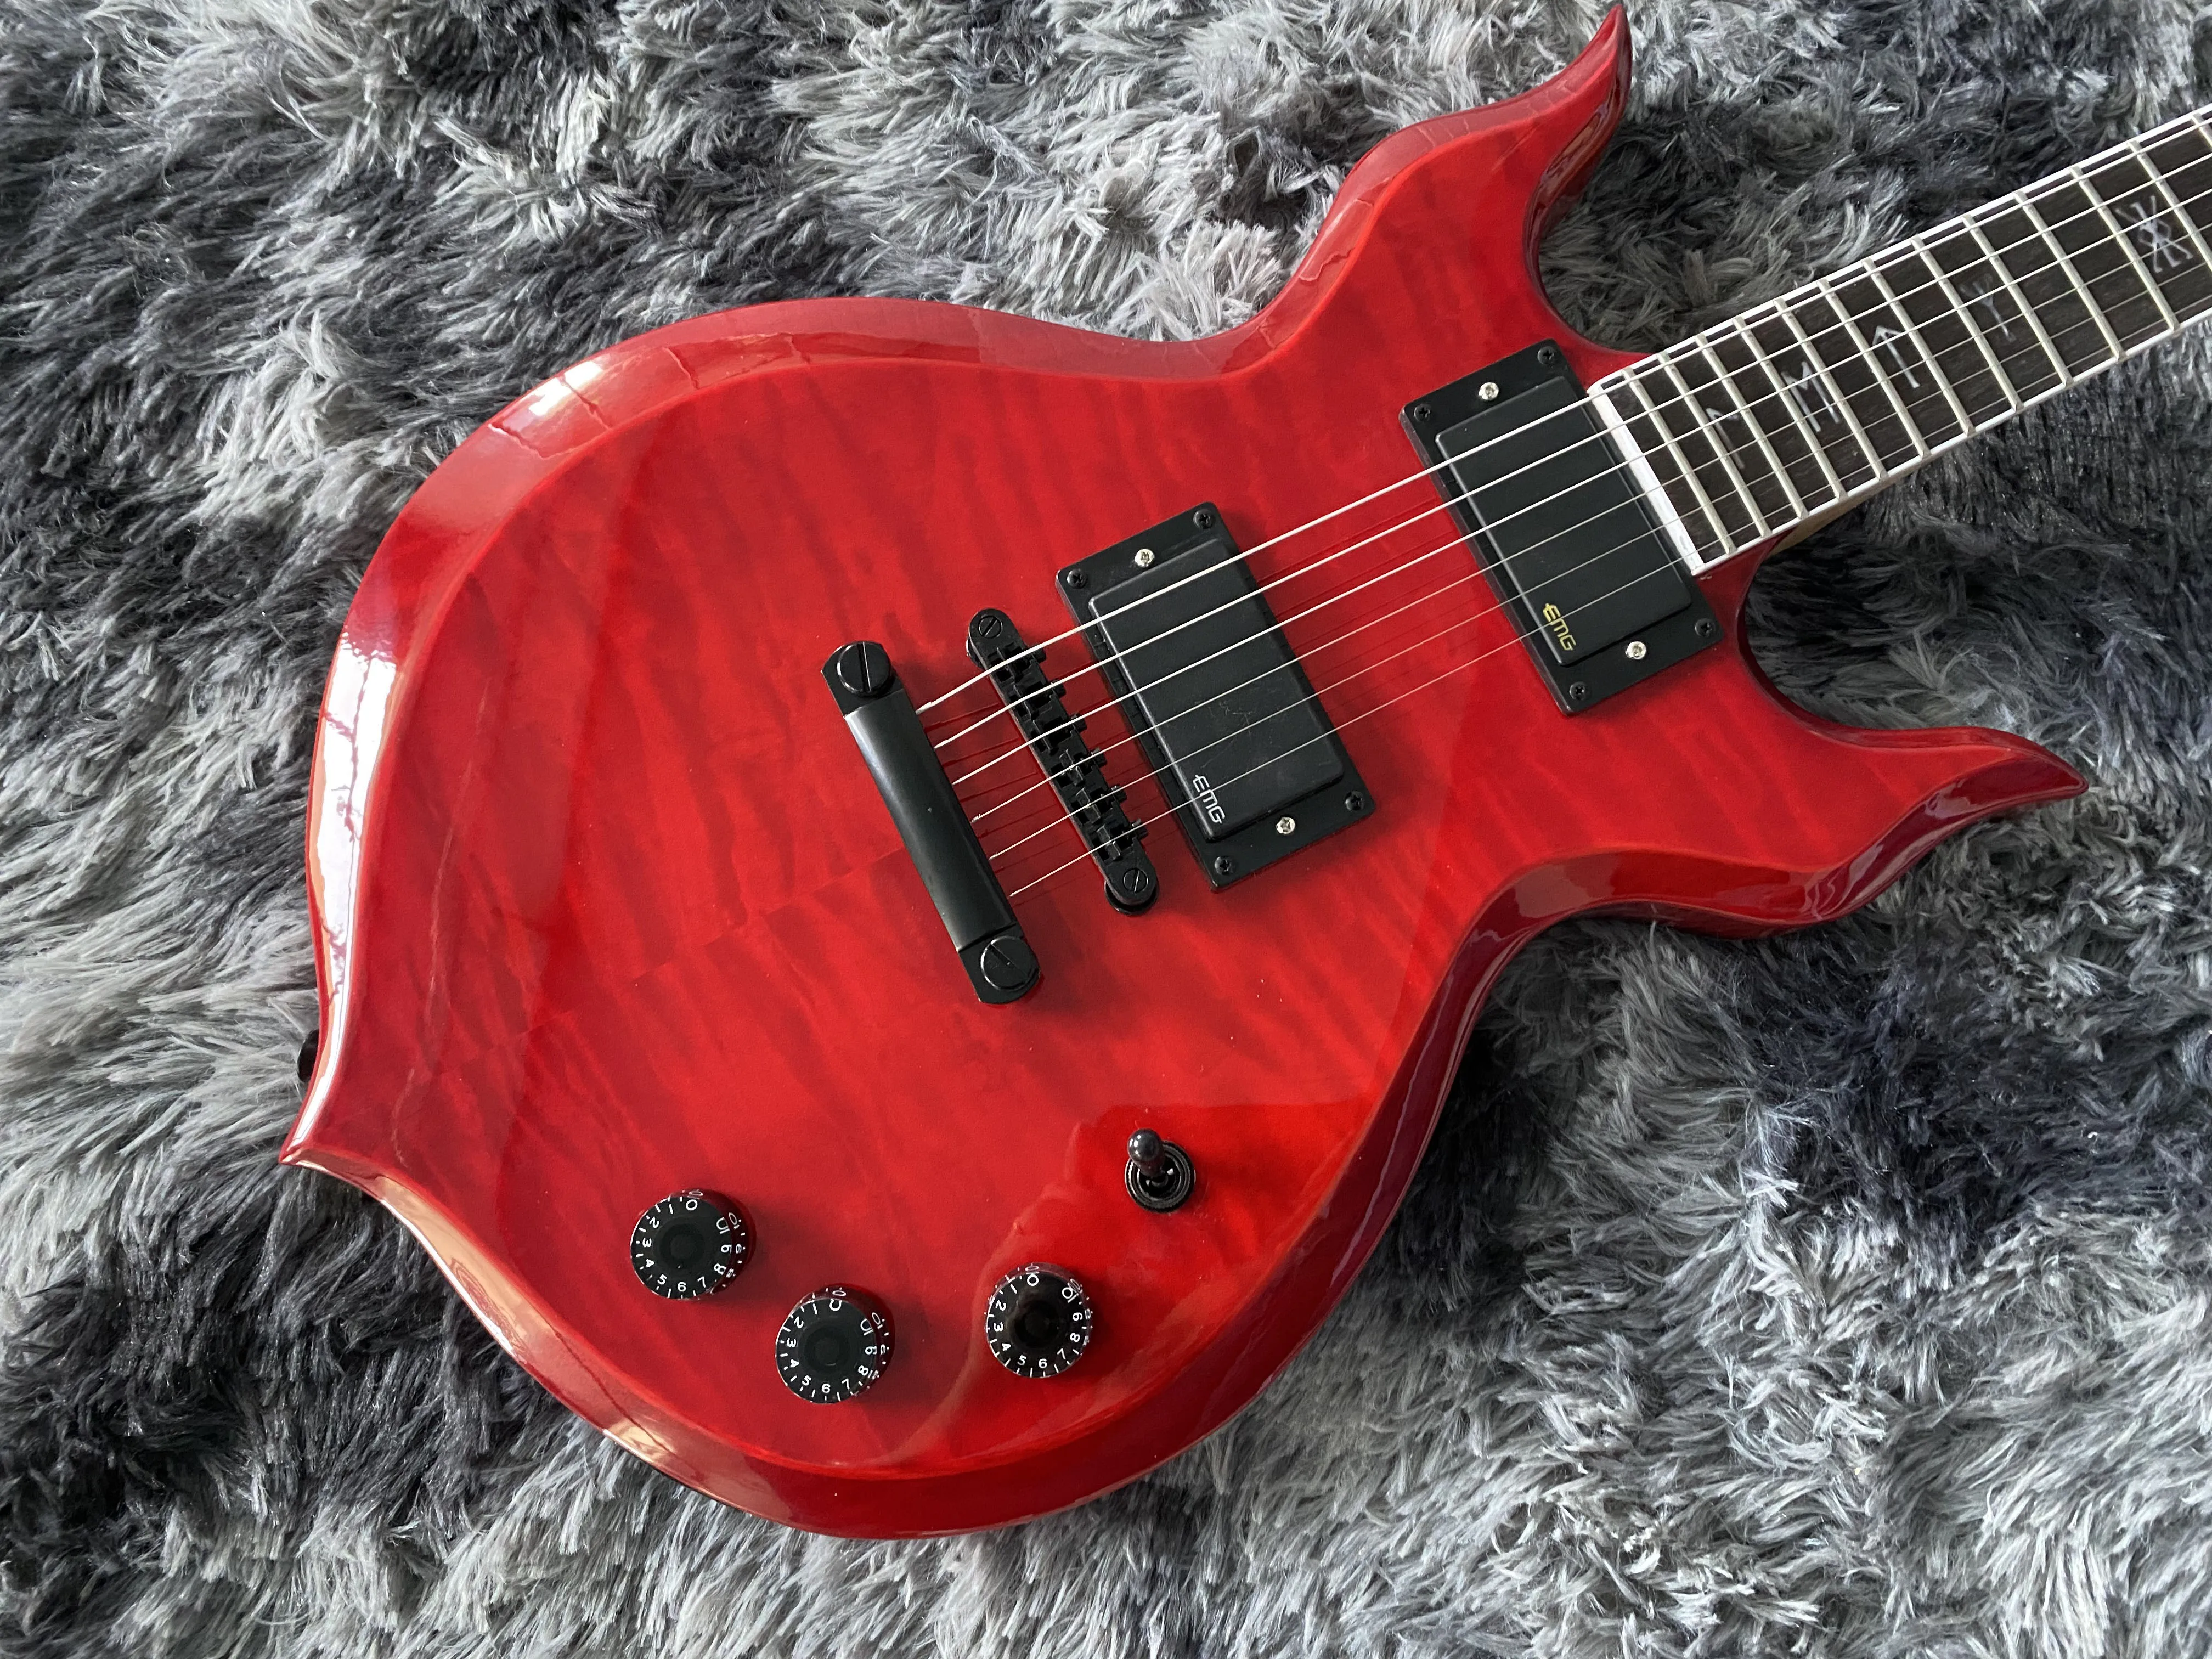 Chinês Guitarra Elétrica M De Áudio De Dois Lados Flame Maple Top Preto De Hardware Cor Vermelha Transparente